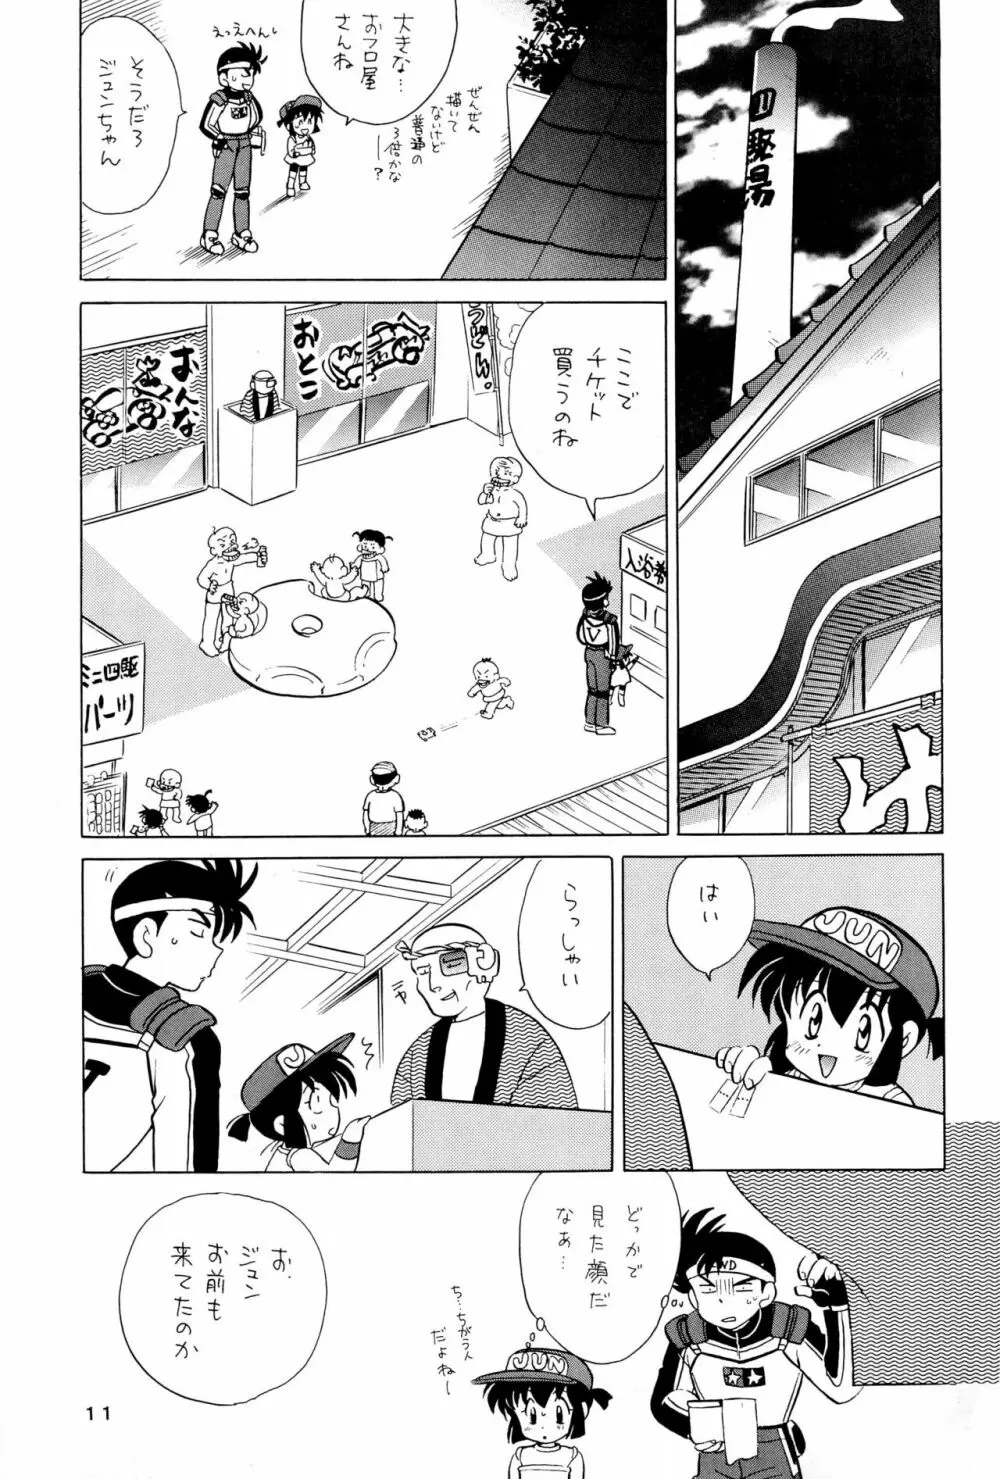 四駆遊戯 巻之弐 - page11